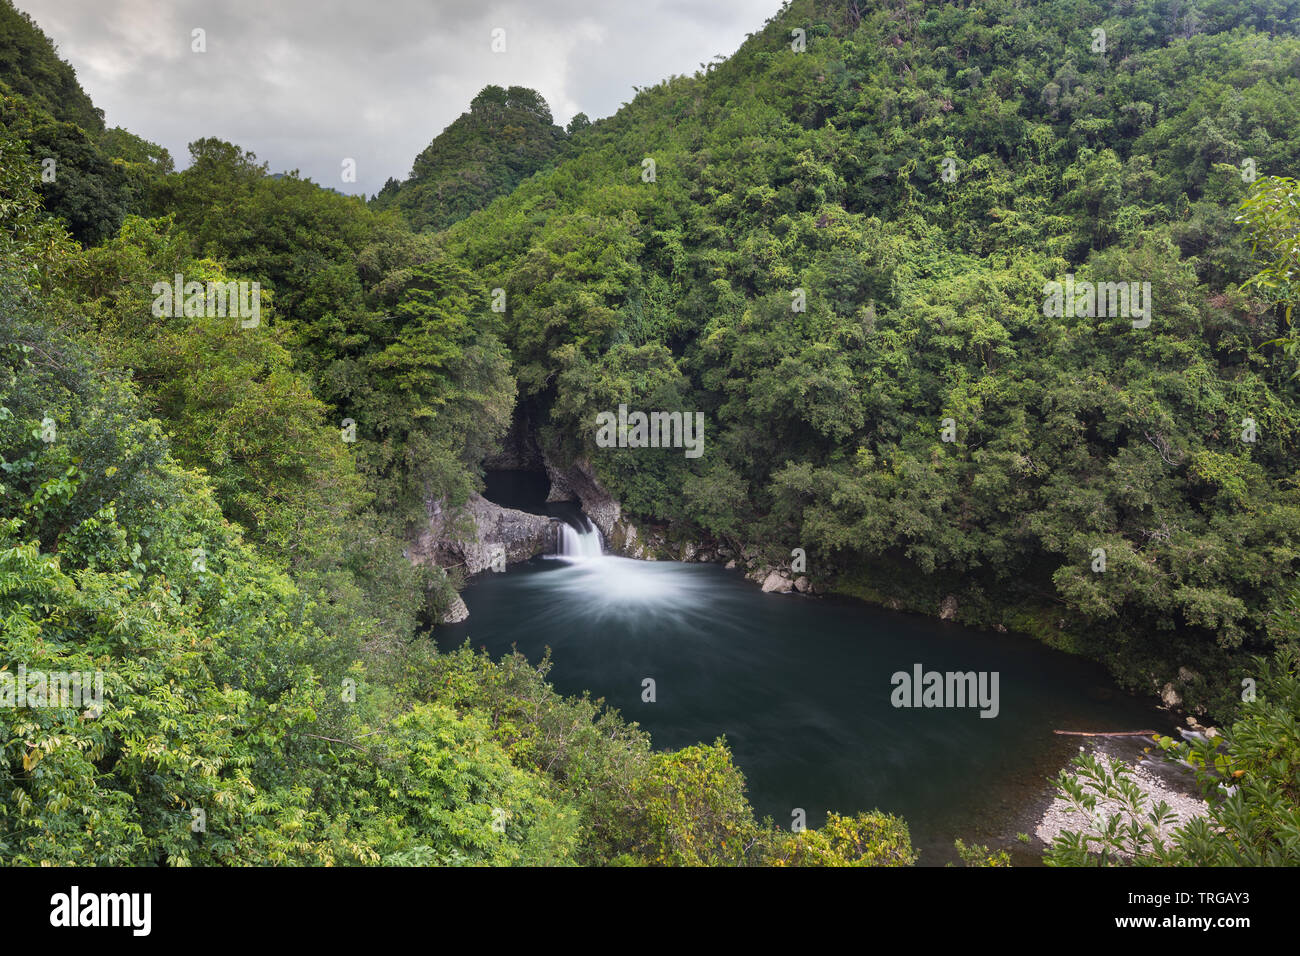 Bassin la mer sur la rivière des roches, l'île de la Réunion, France Banque D'Images